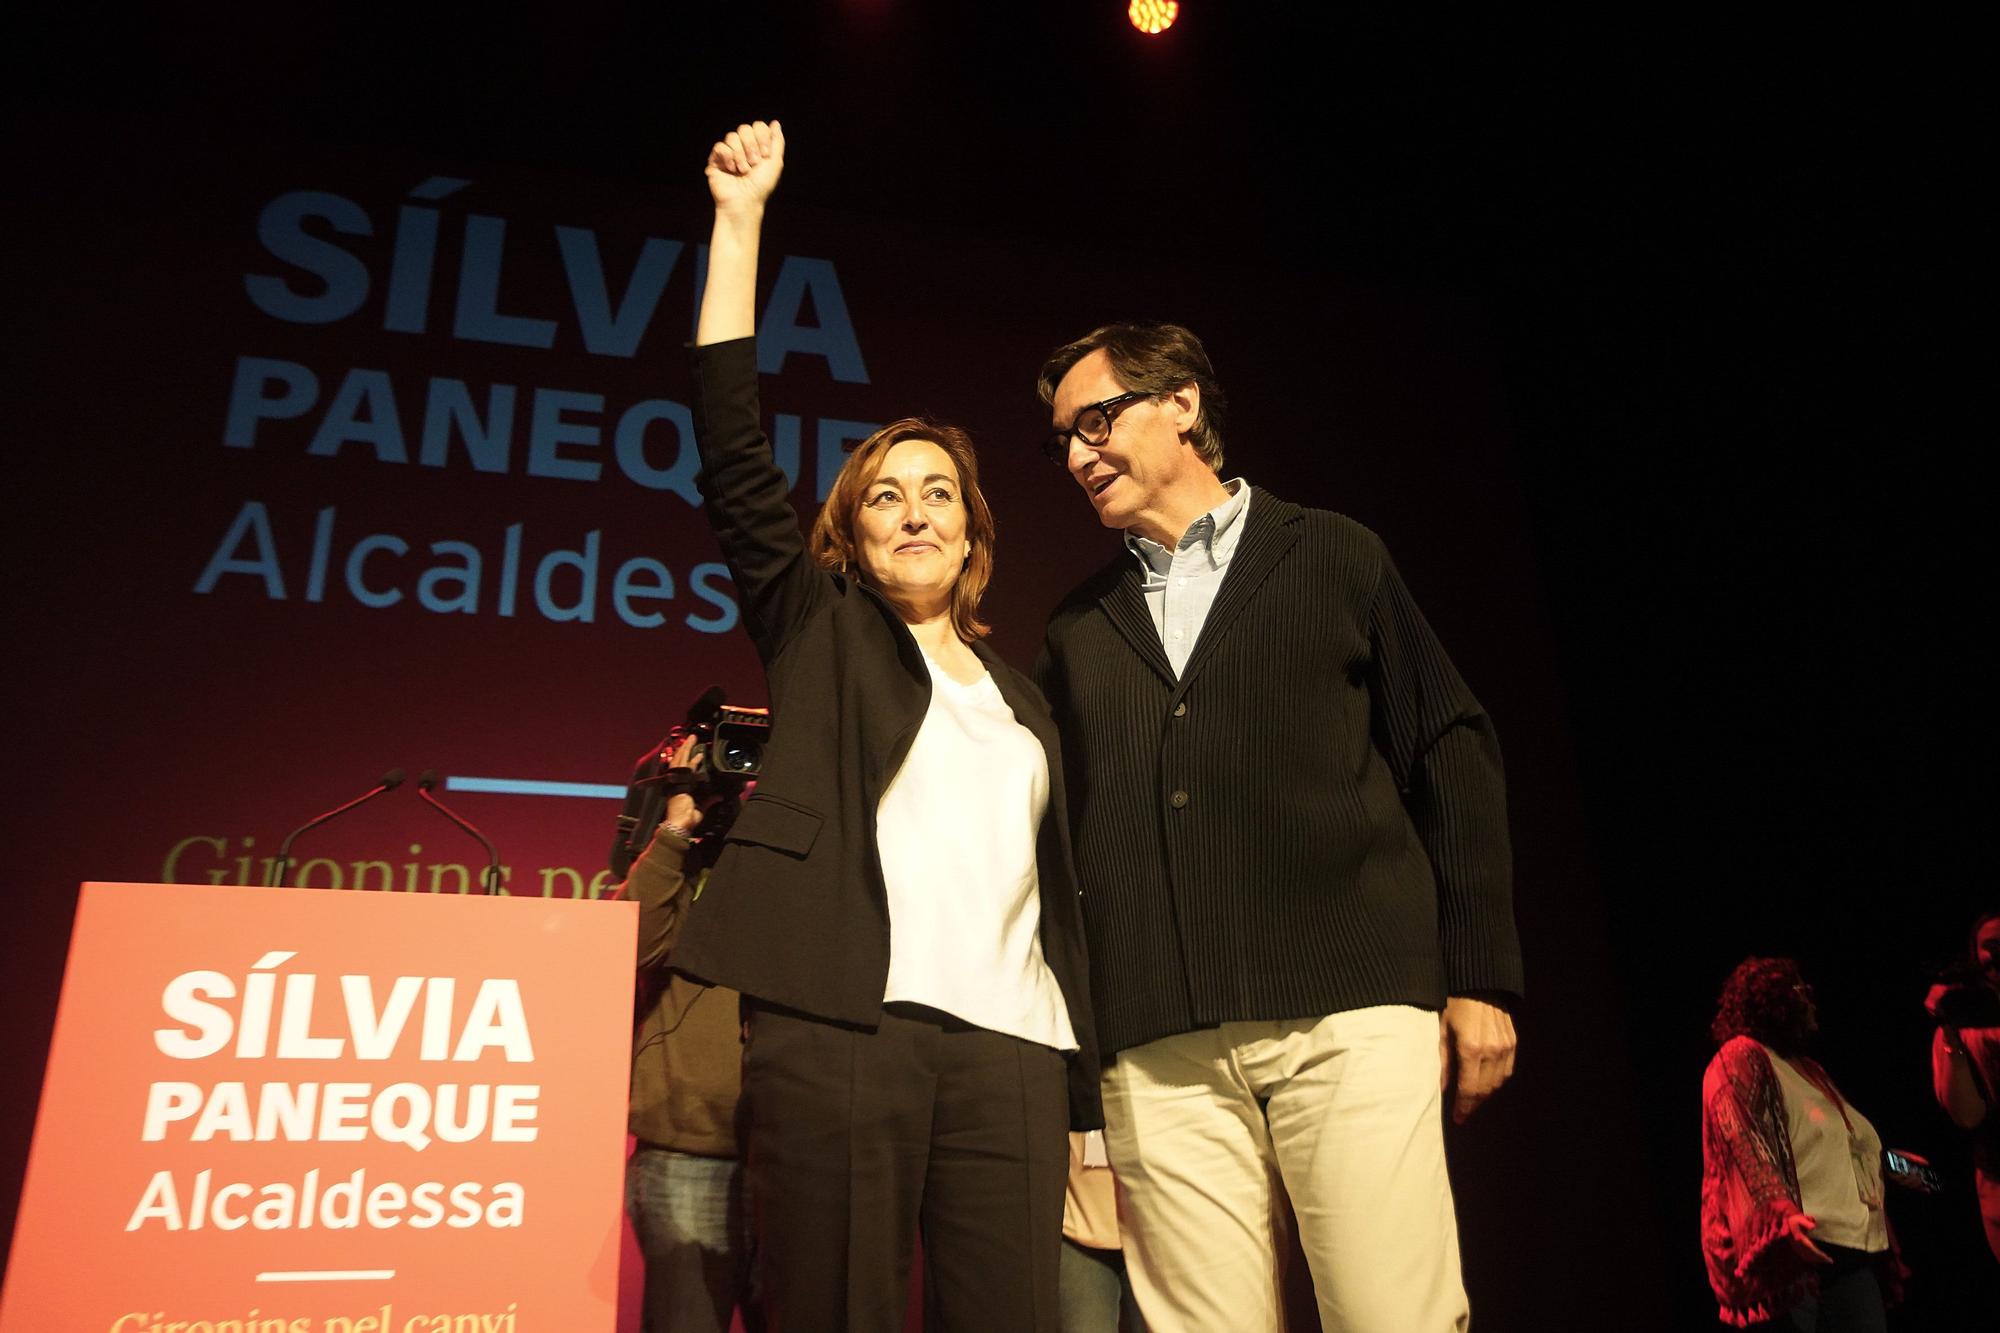 Les millors imatges de l'acte central de Campanya del PSC de Girona